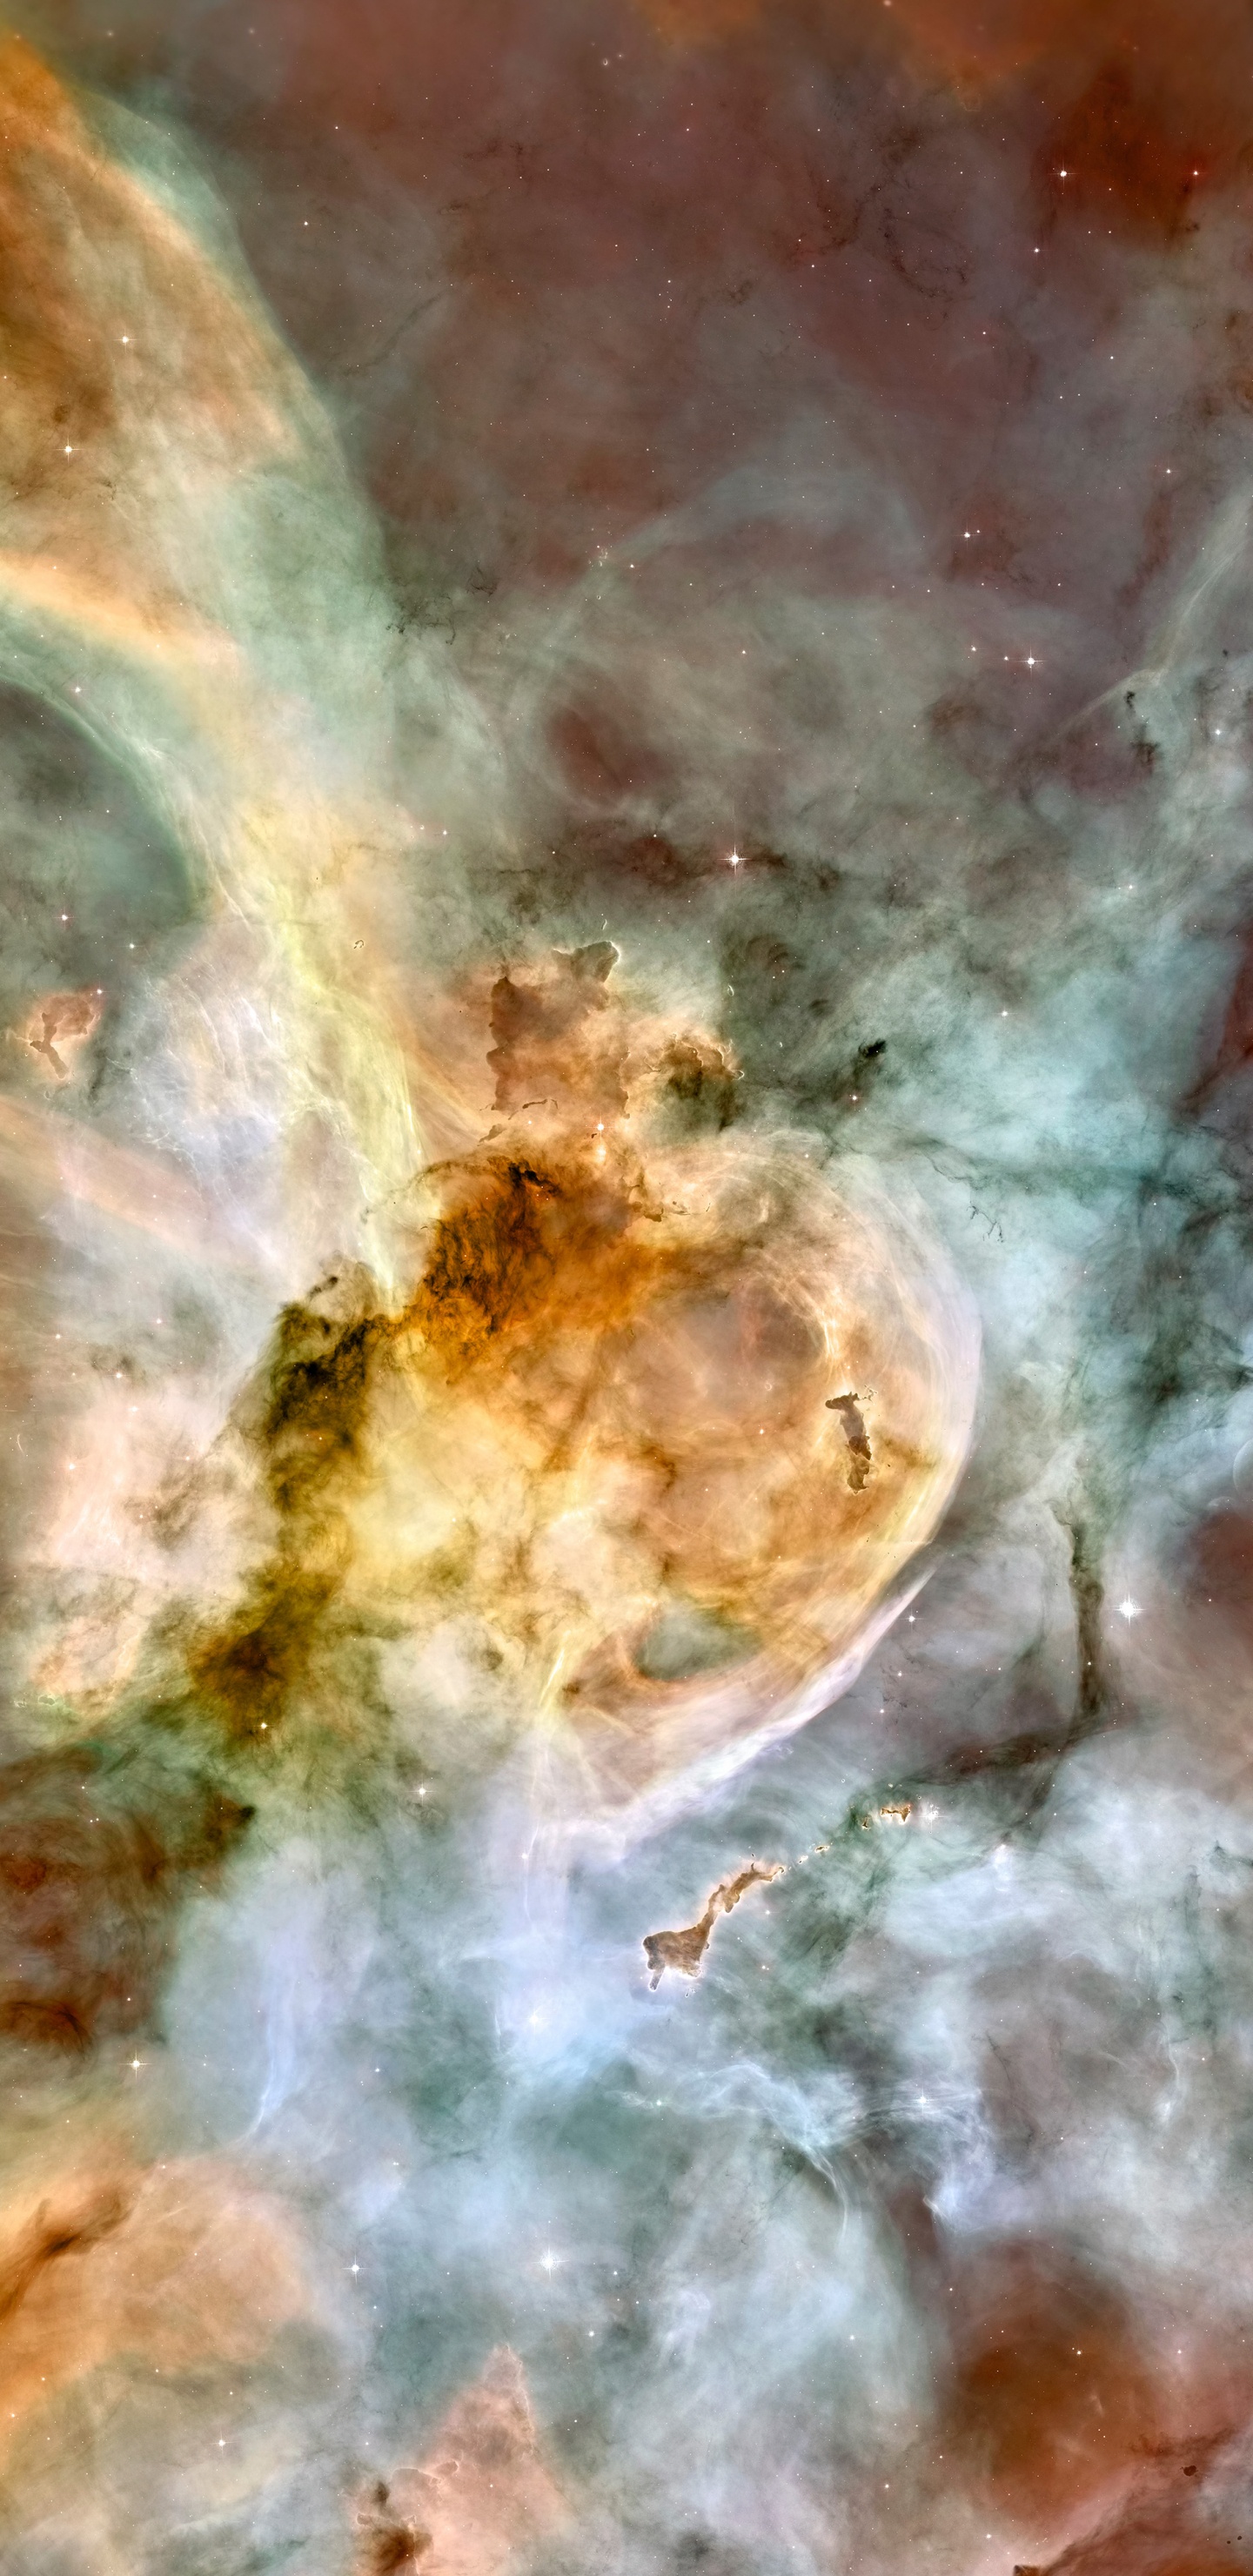 Carina星云, 哈勃太空望远镜, 明星, 空间, 天文学对象 壁纸 1440x2960 允许